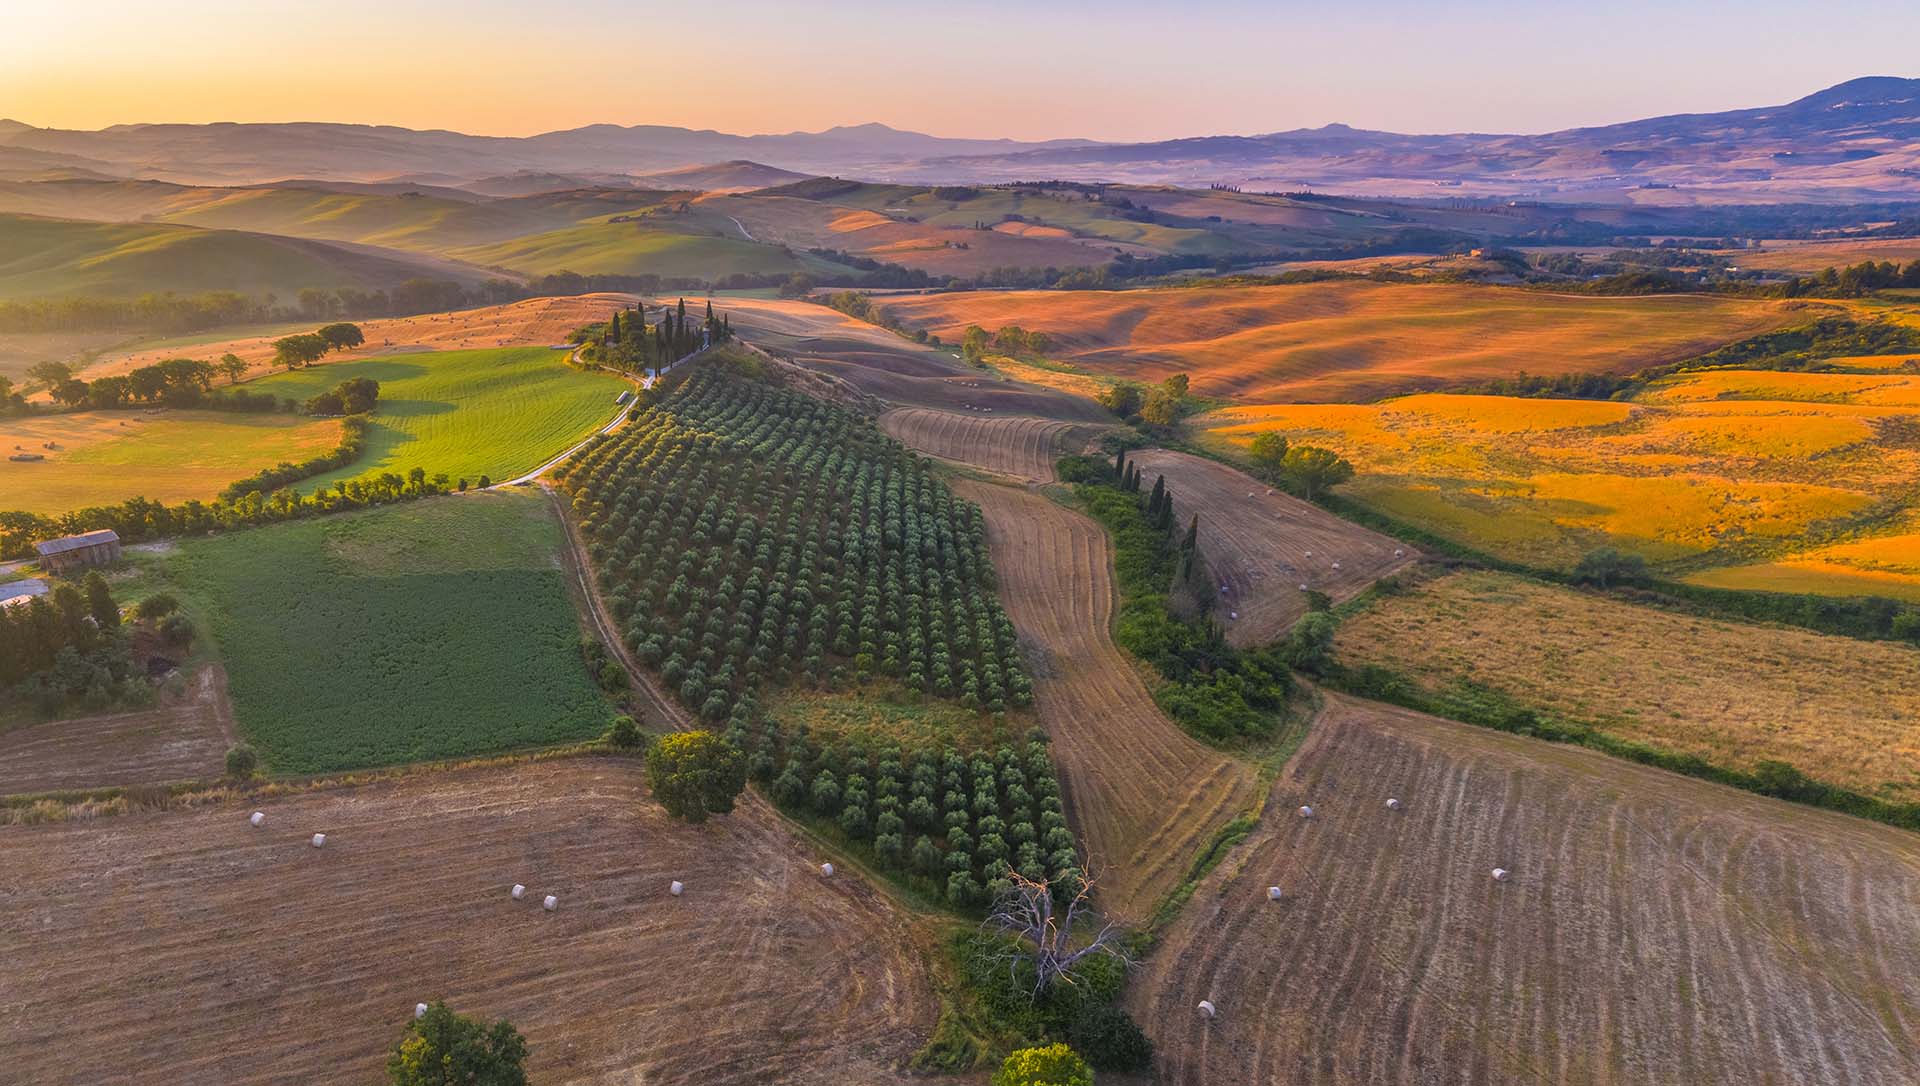 Toscana, un giardino di ulivi nelle colline della Val d'Orcia